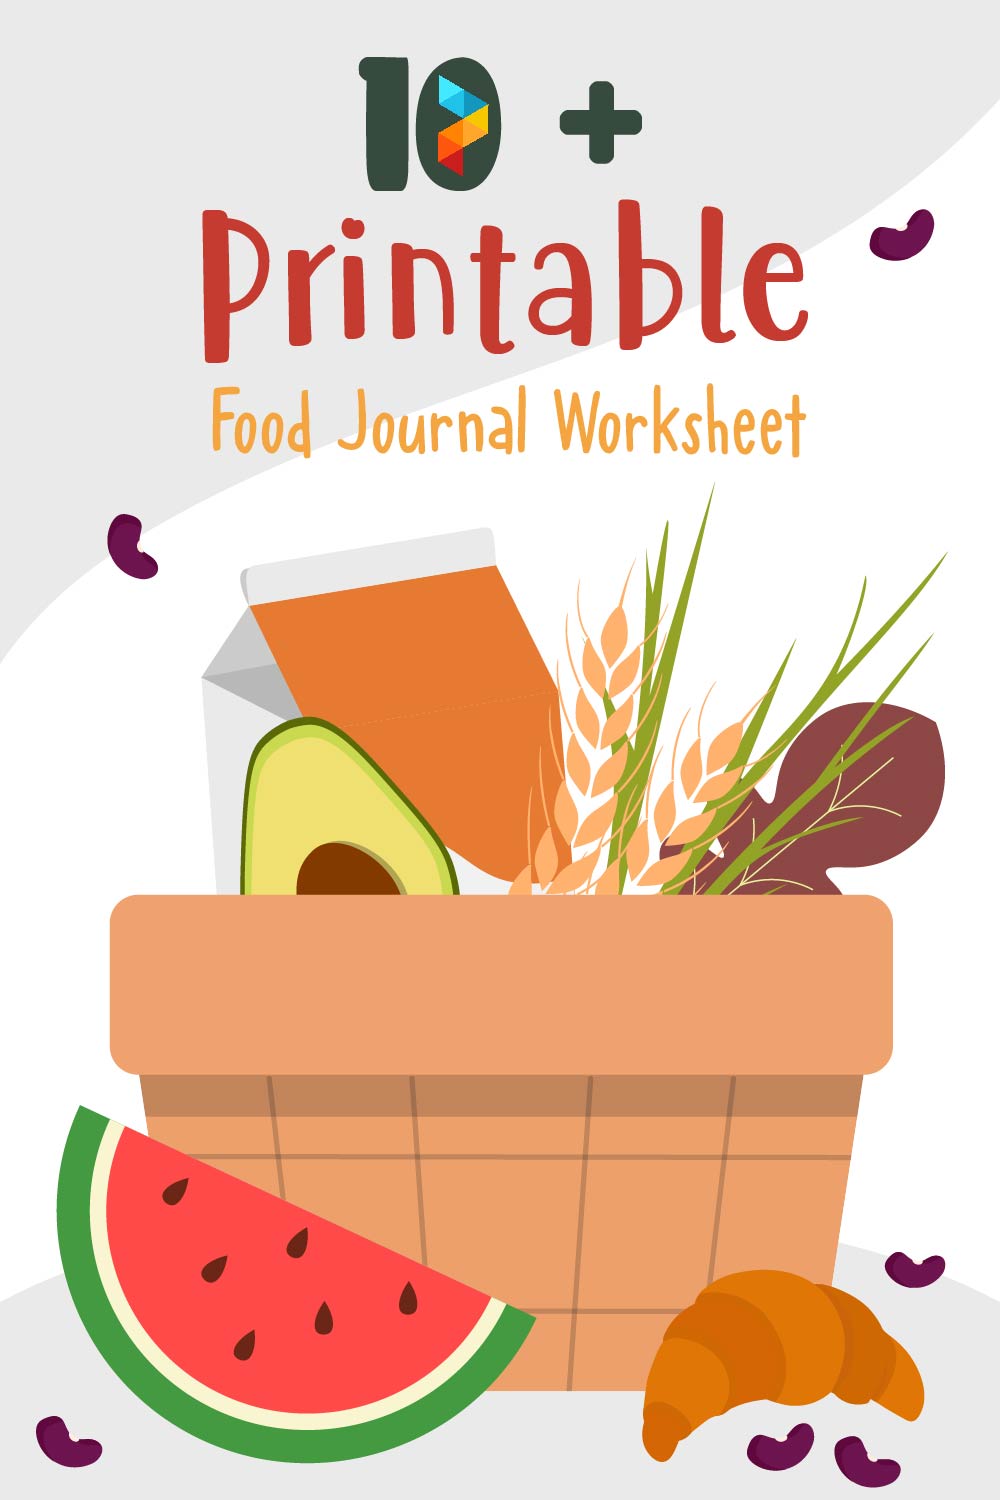 Food Journal Worksheet